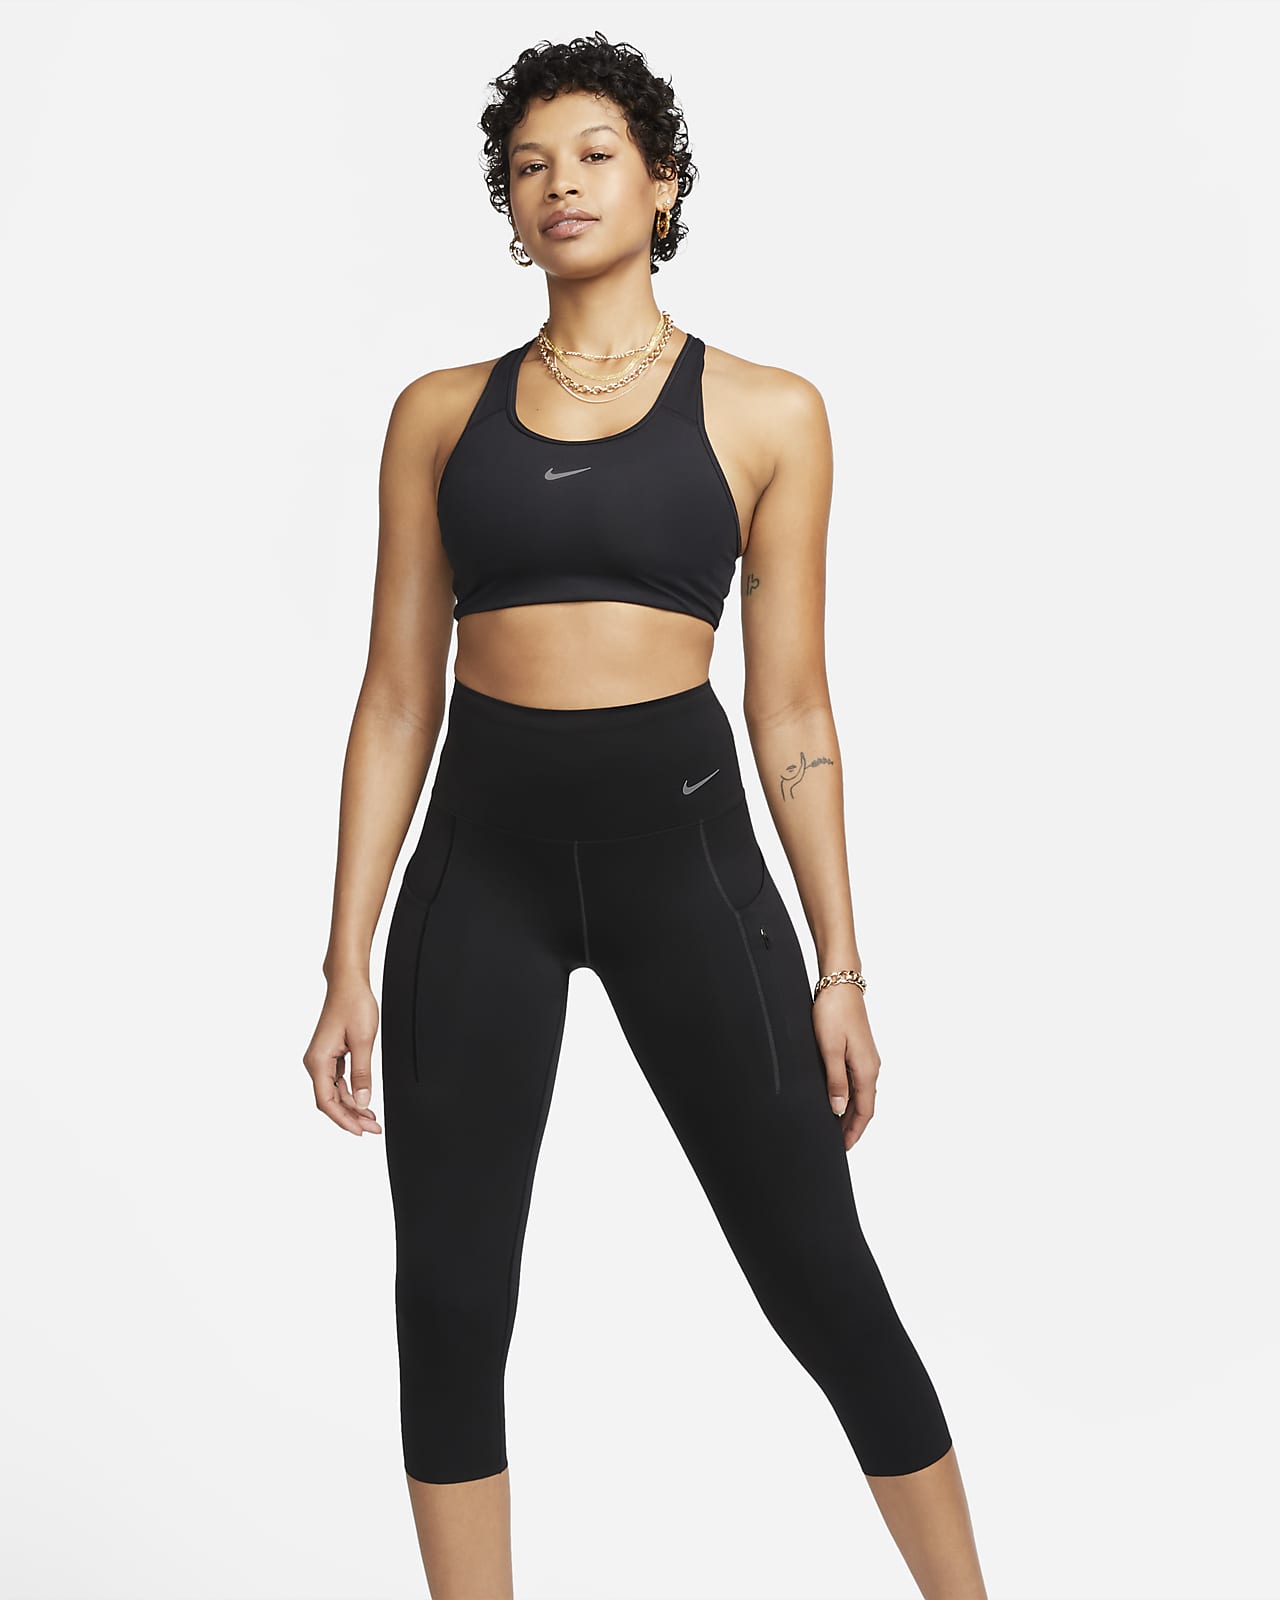 Leggings a vita alta e lunghezza ridotta a sostegno elevato con tasche Nike Go – Donna